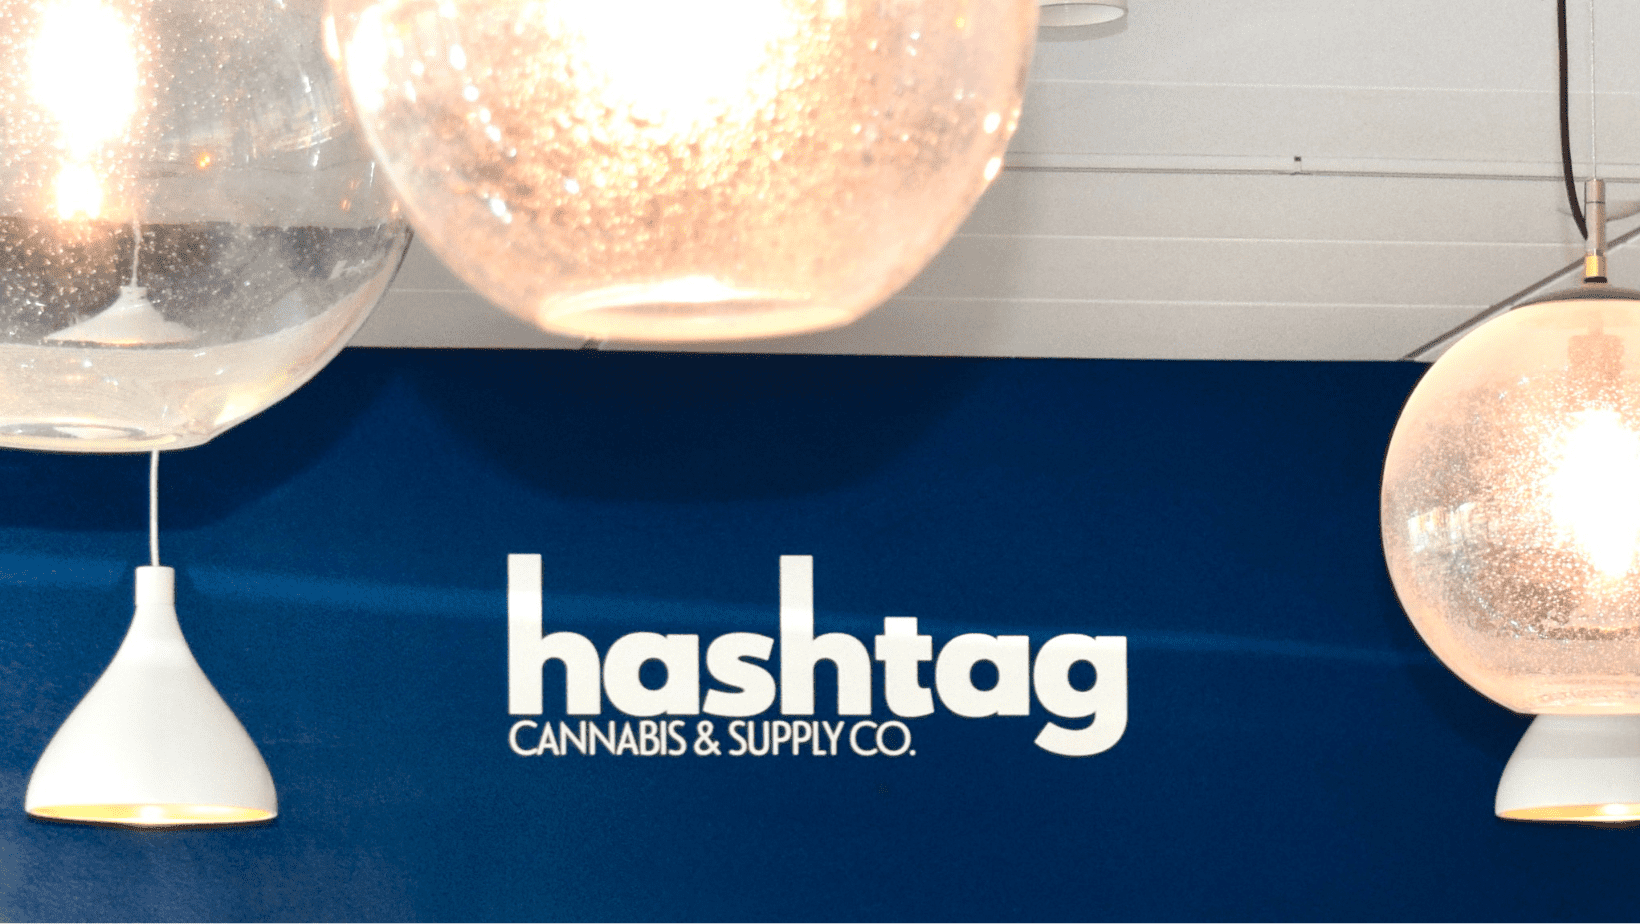 hashtag cannabis